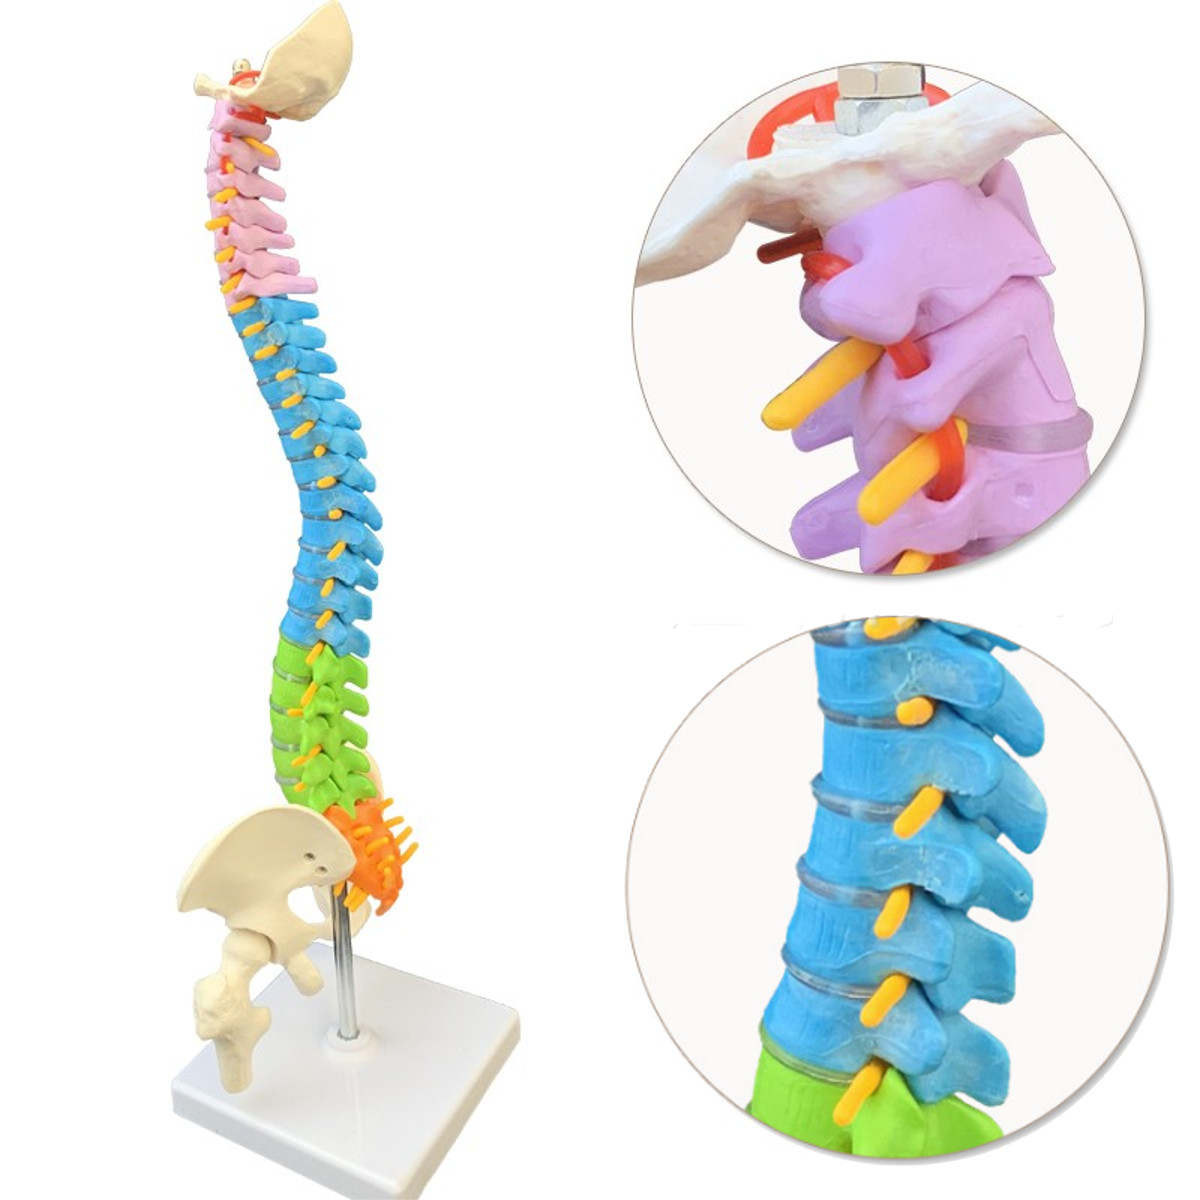 

45cm Colorful Vertebral Column Human Spine Anatomical Model Skeleton Medical Science Education